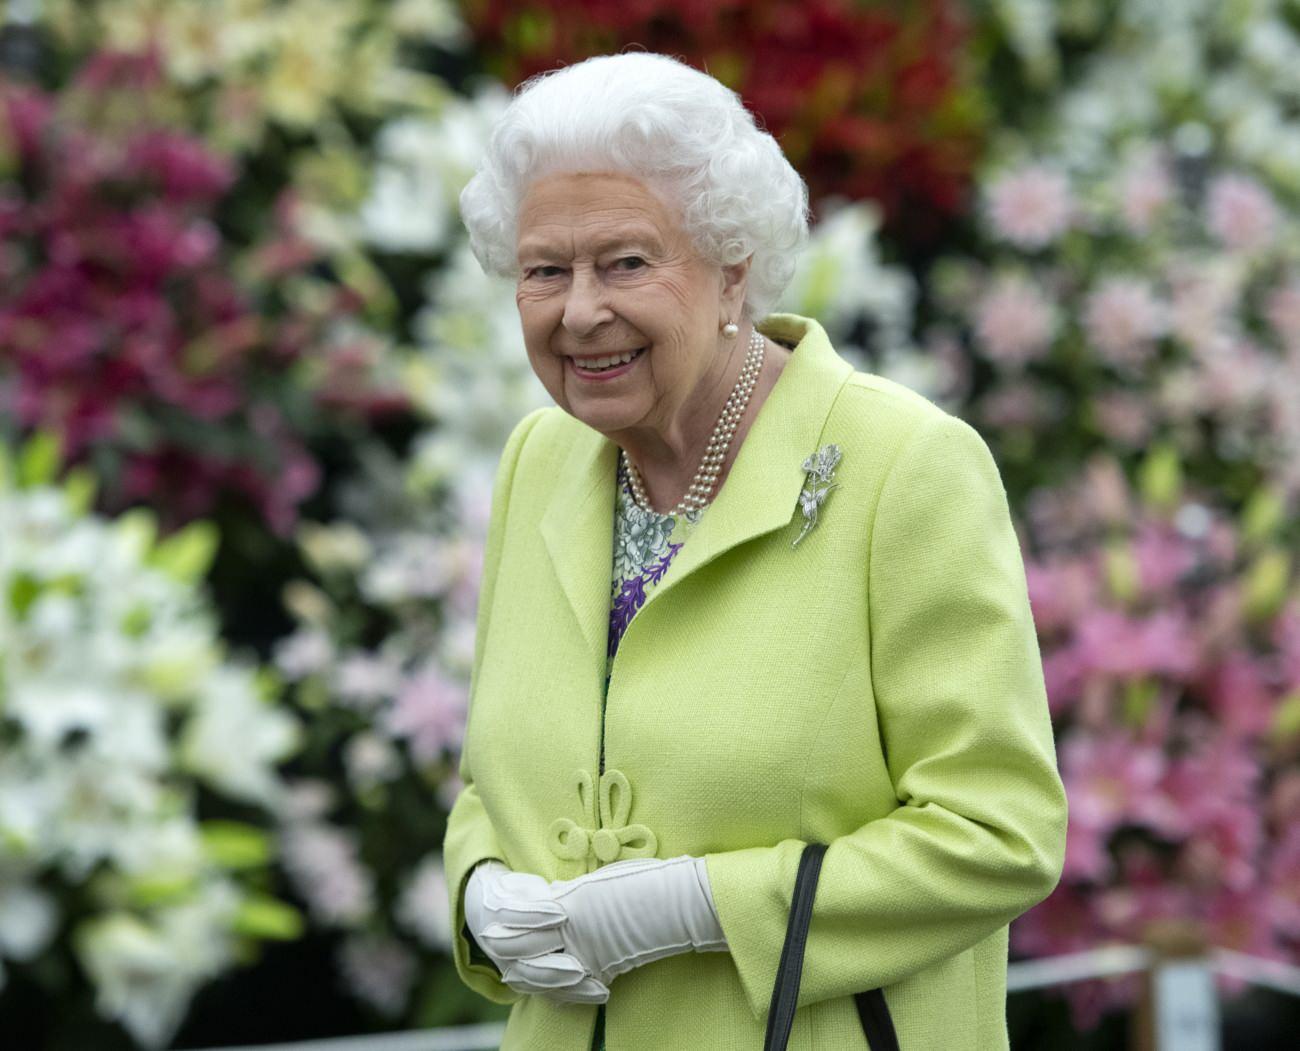 Kraliçe II. Elizabeth Parlamento açılışına katılım sağlayamayacak